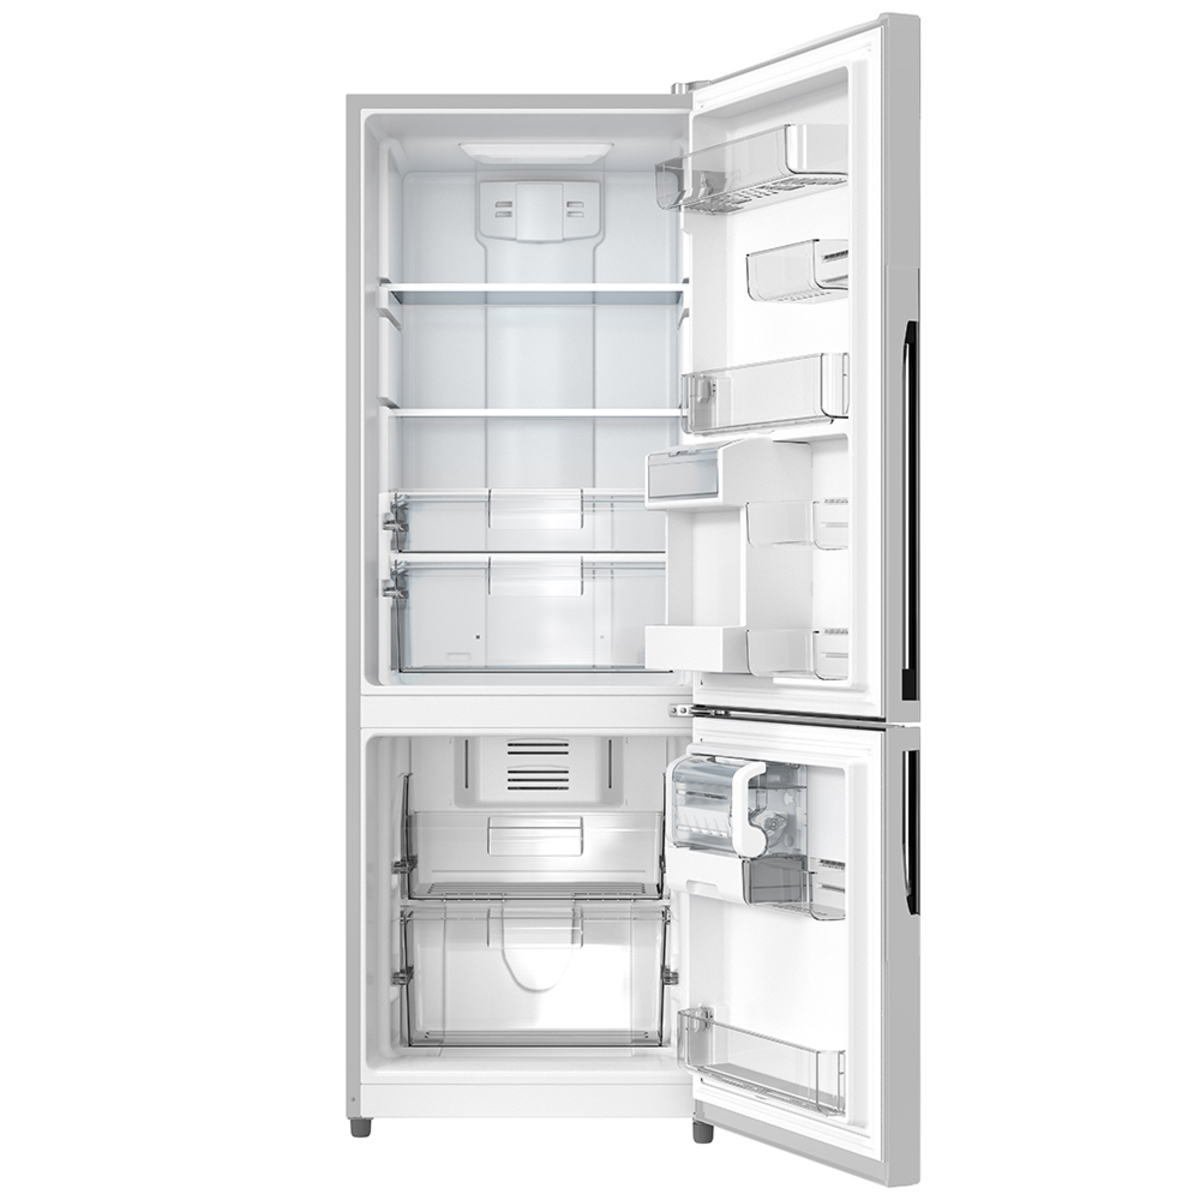 Refrigerador Automático 400 L Inoxidable Mabe - RMS400IBMRX0, Refrigeradores, Soluciones de Refrigeración en México